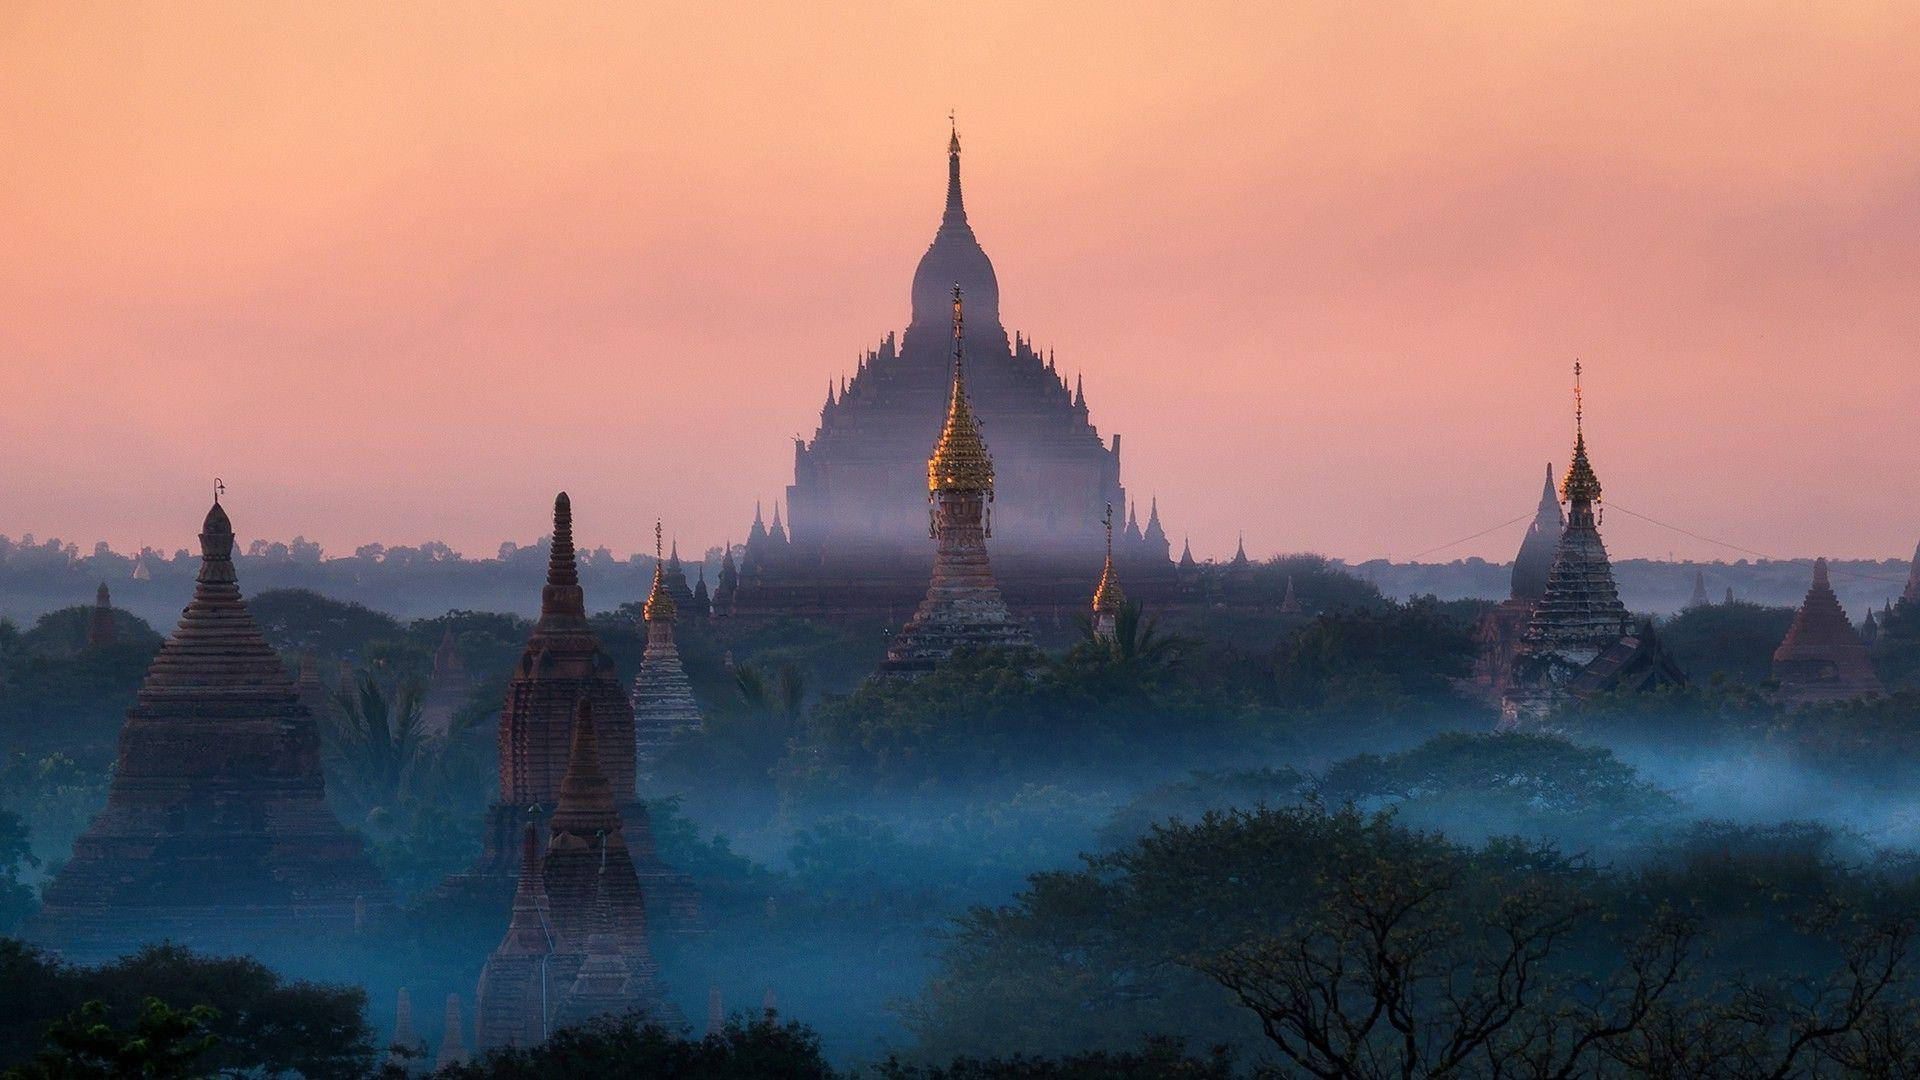 Burma Pagoda Spires